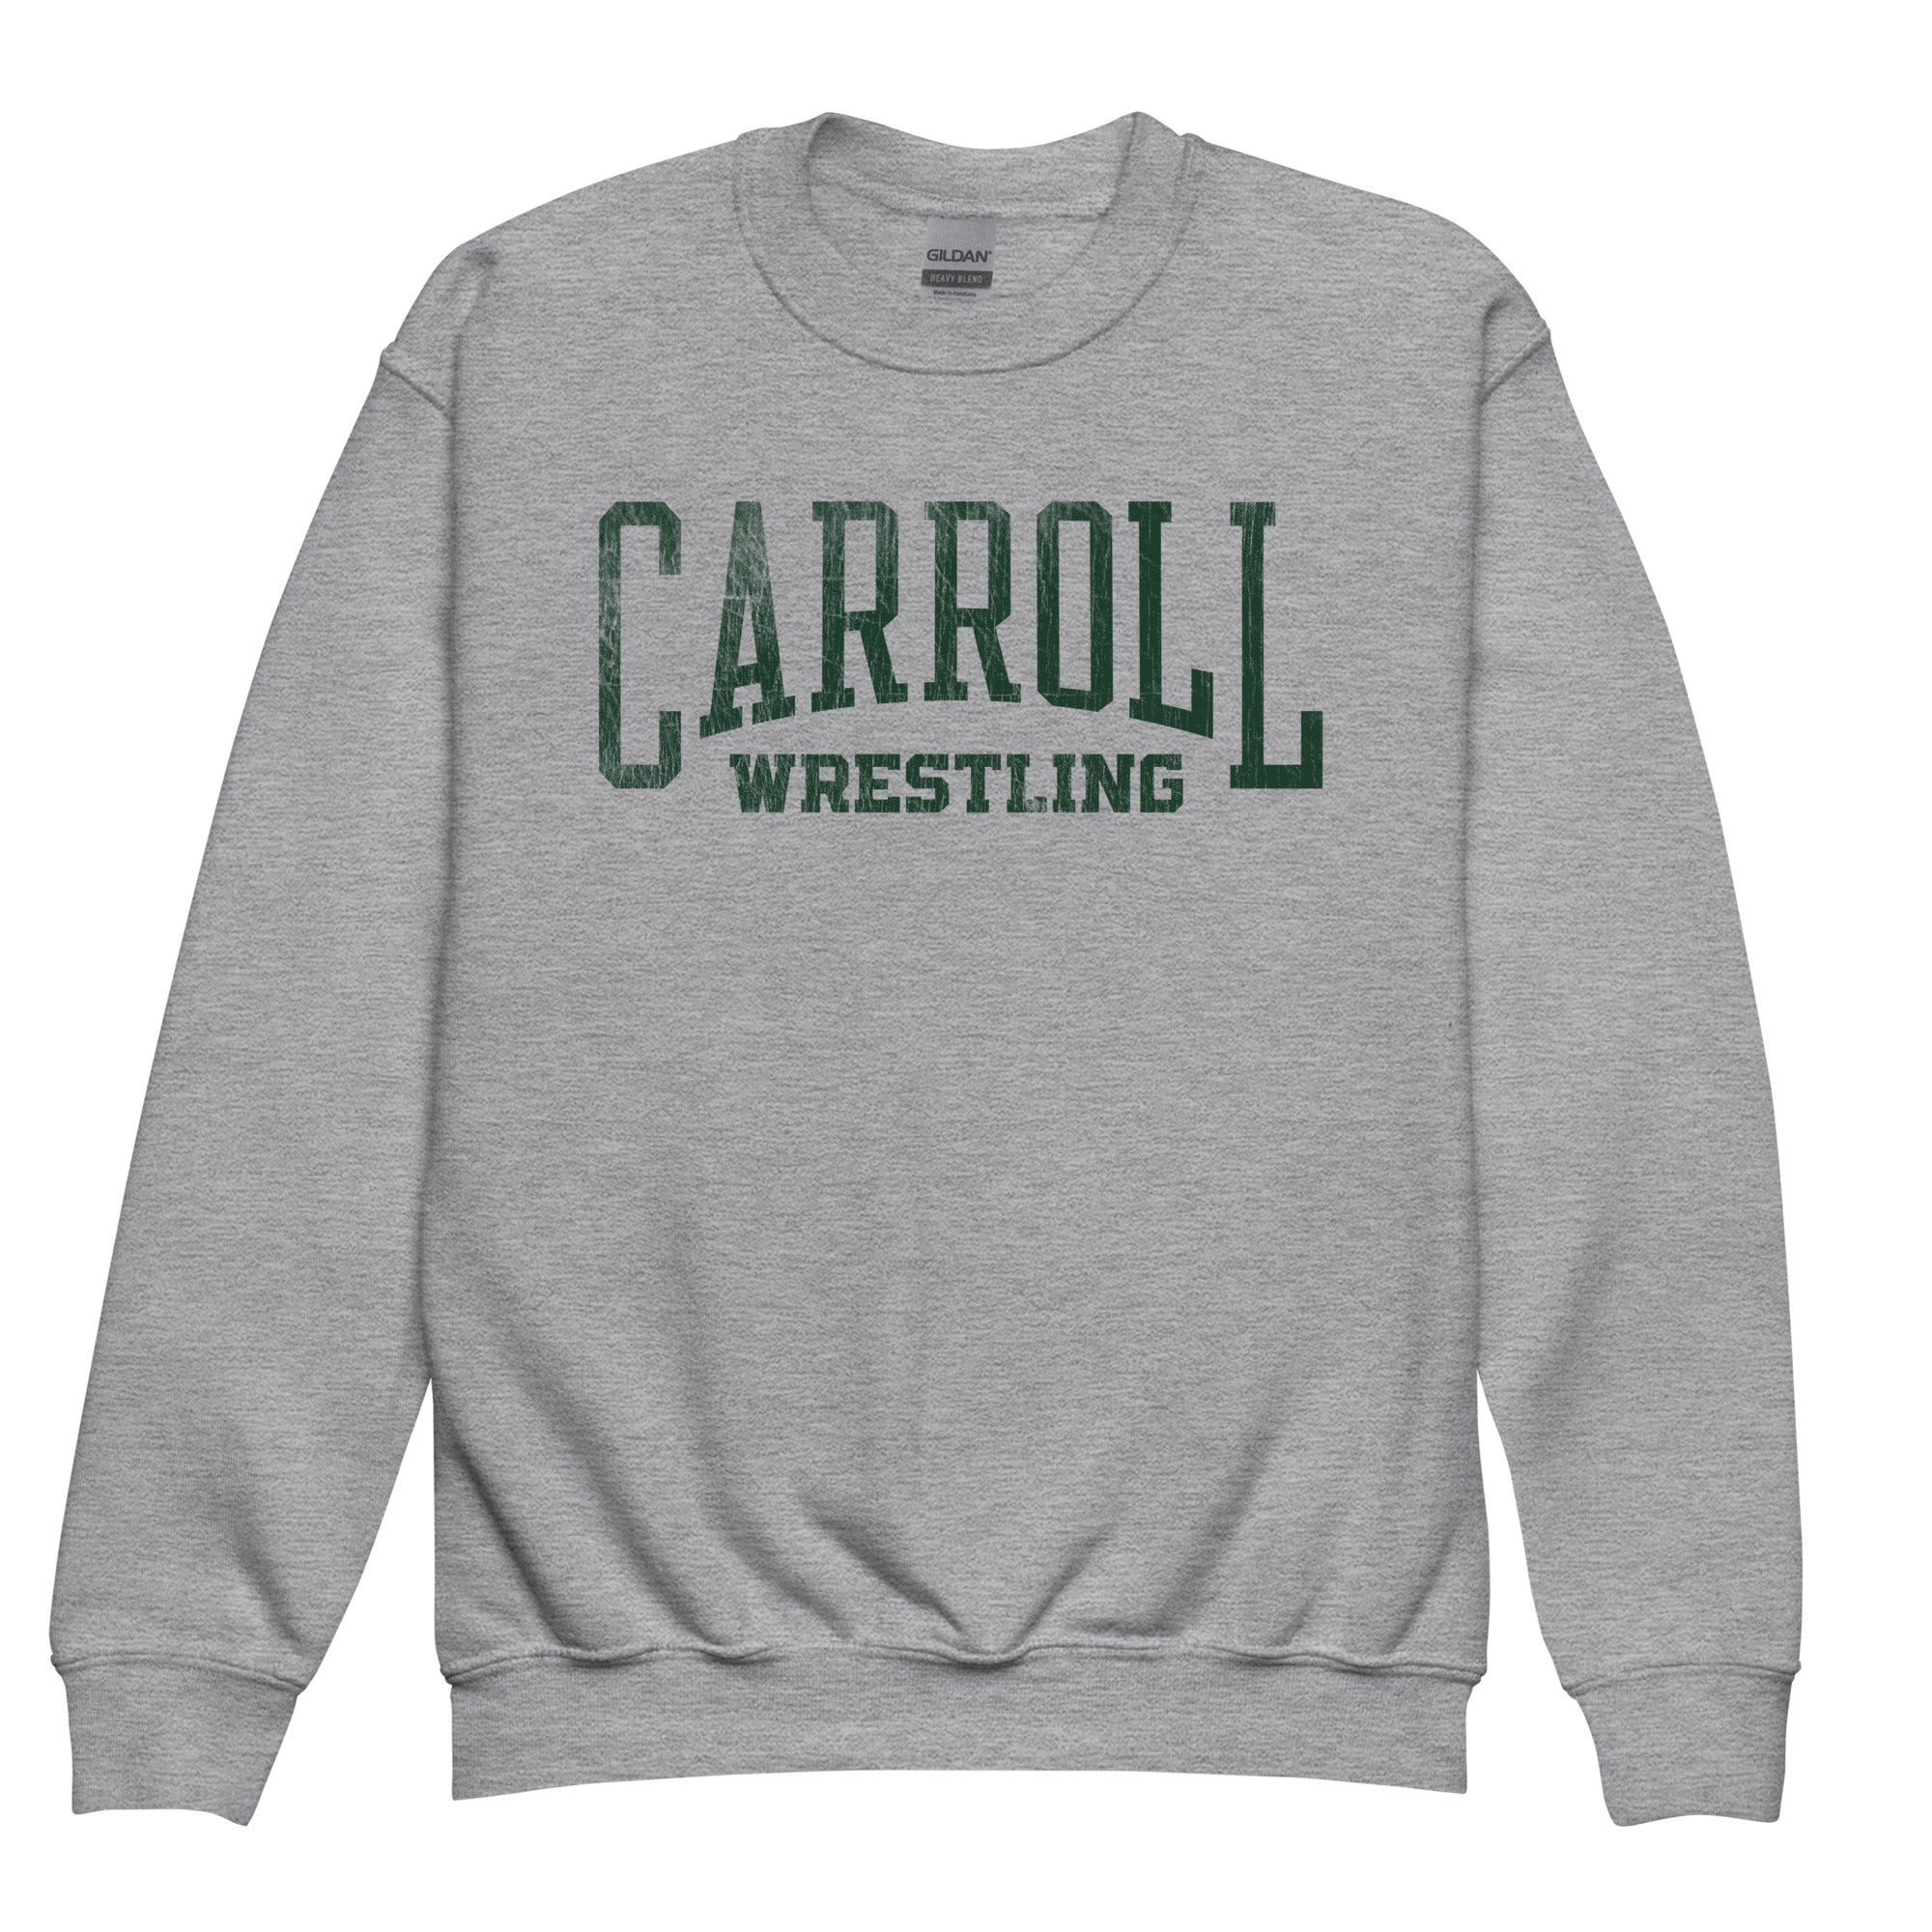 Carroll Wrestling Youth crewneck sweatshirt